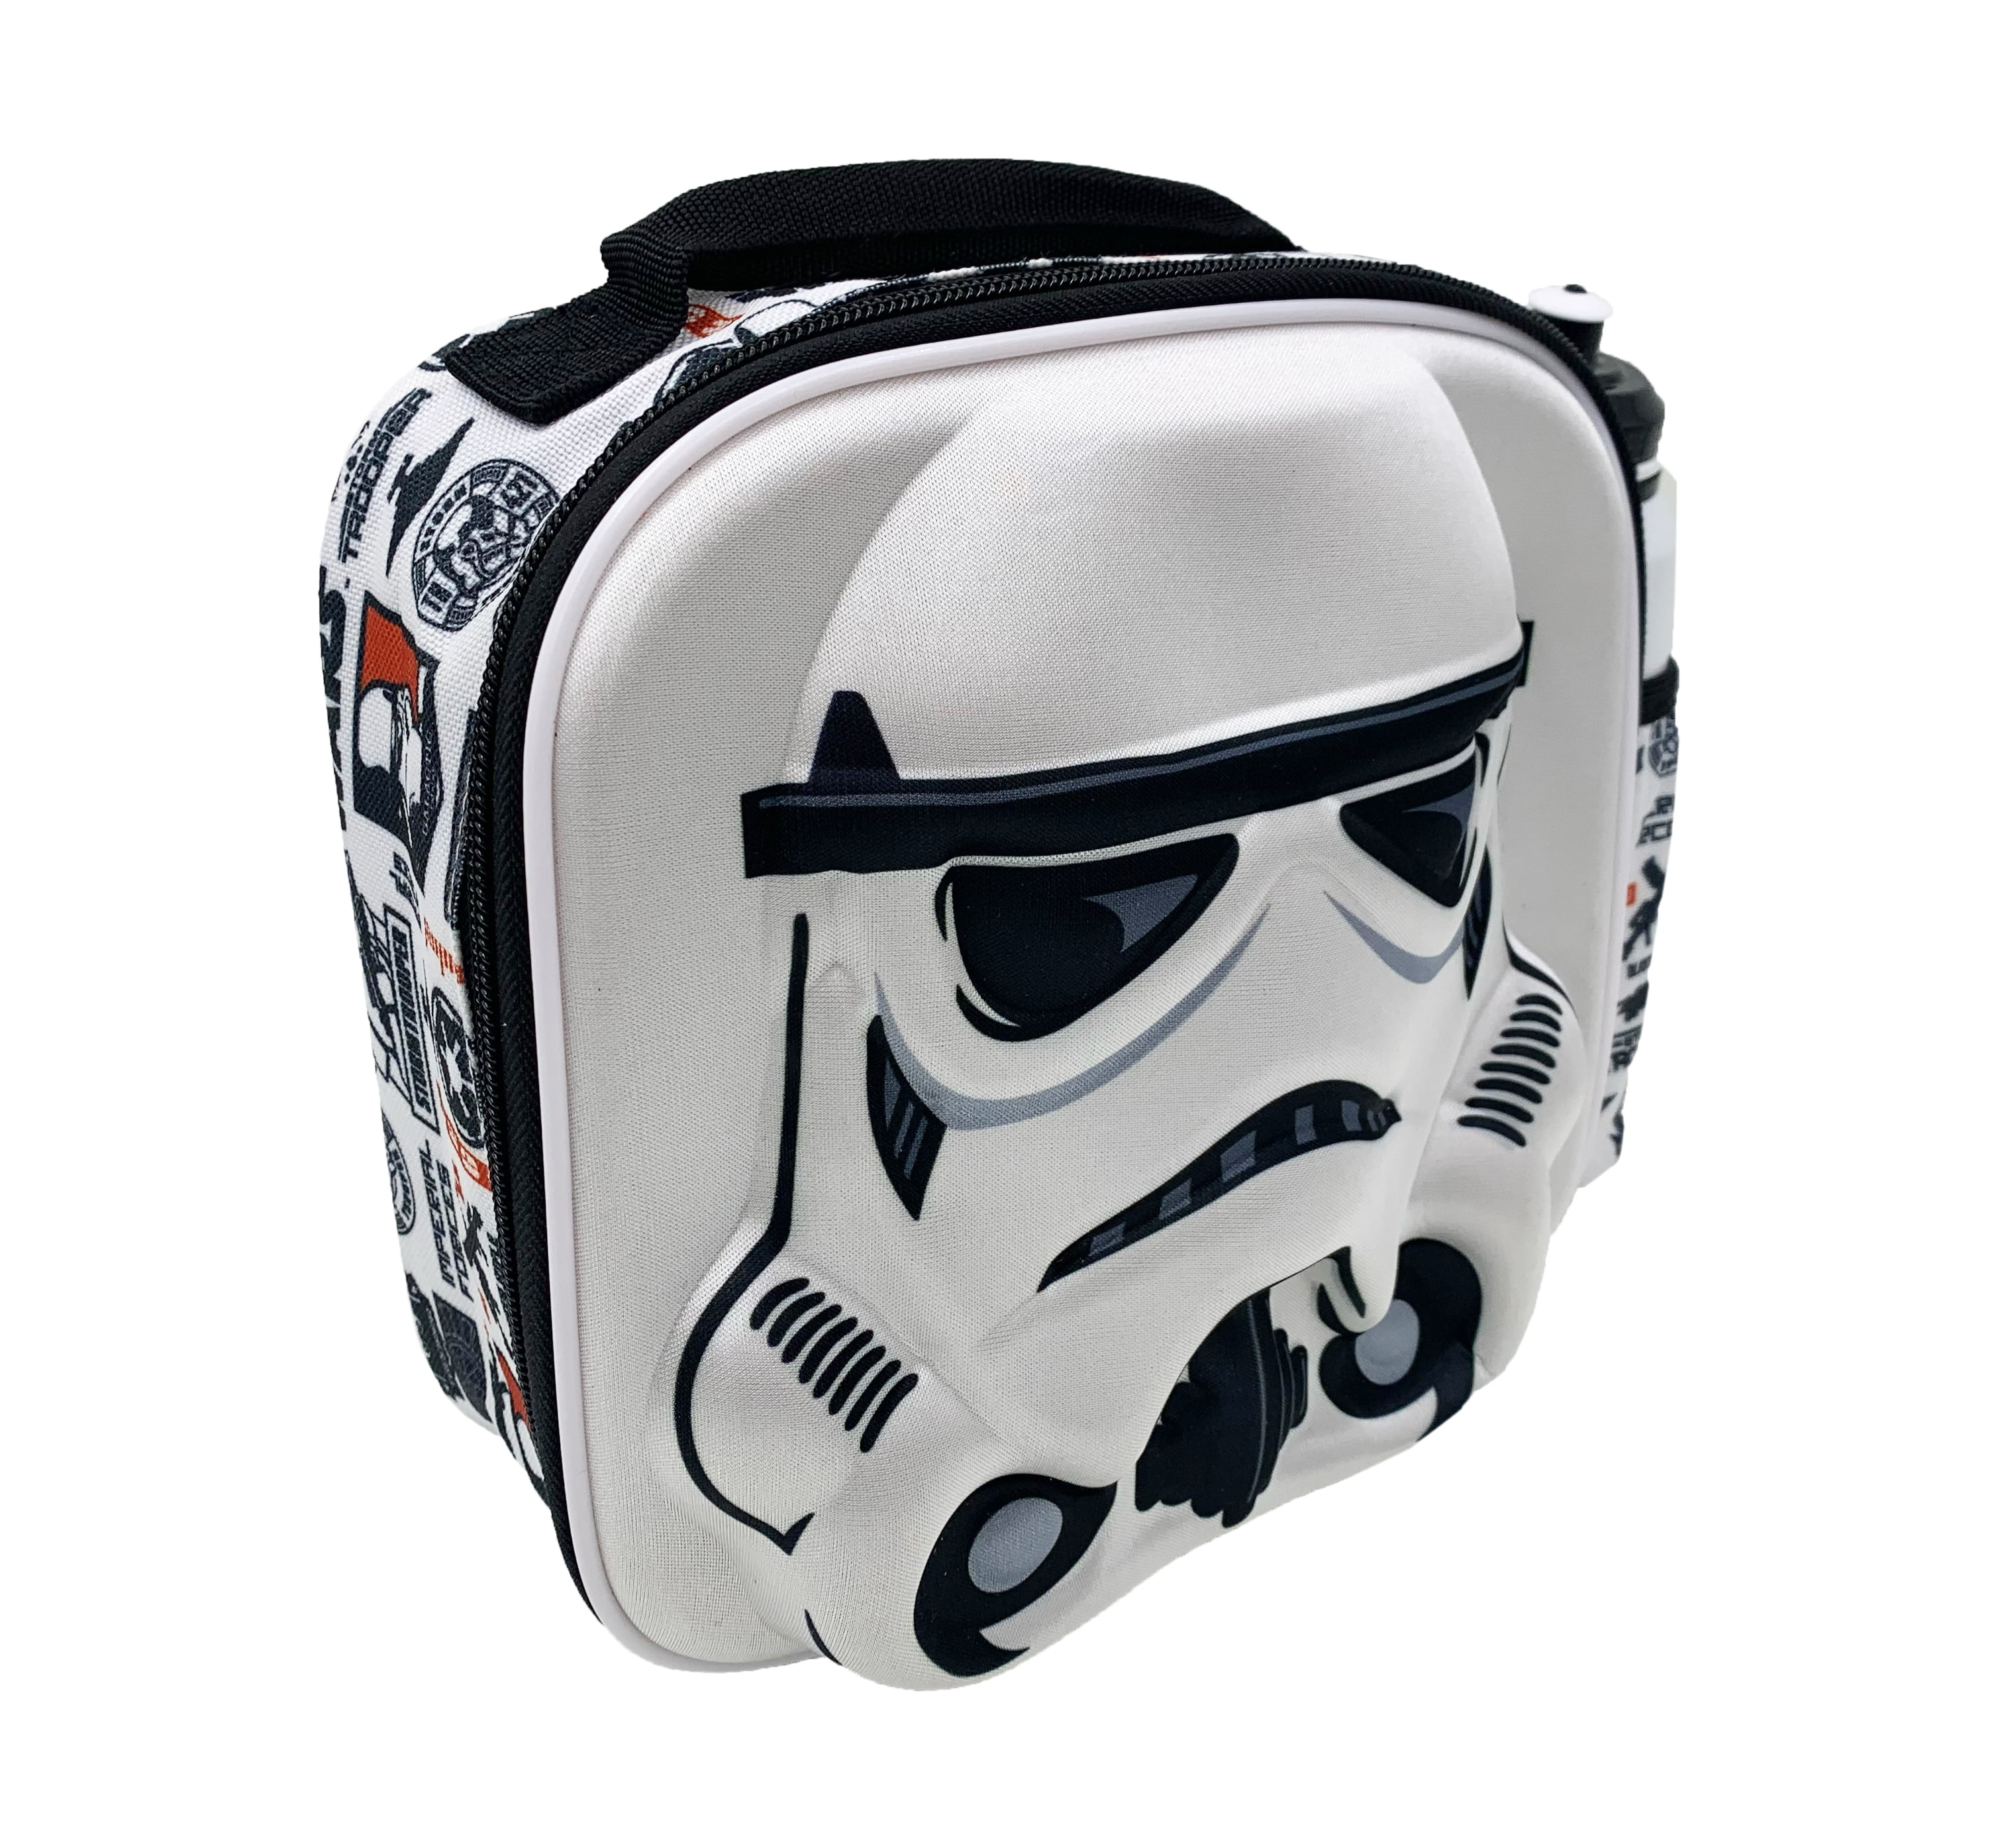 Disney Lego Star Wars Insulated Lunch Bag School Boys Lunch box Darth Vader  New